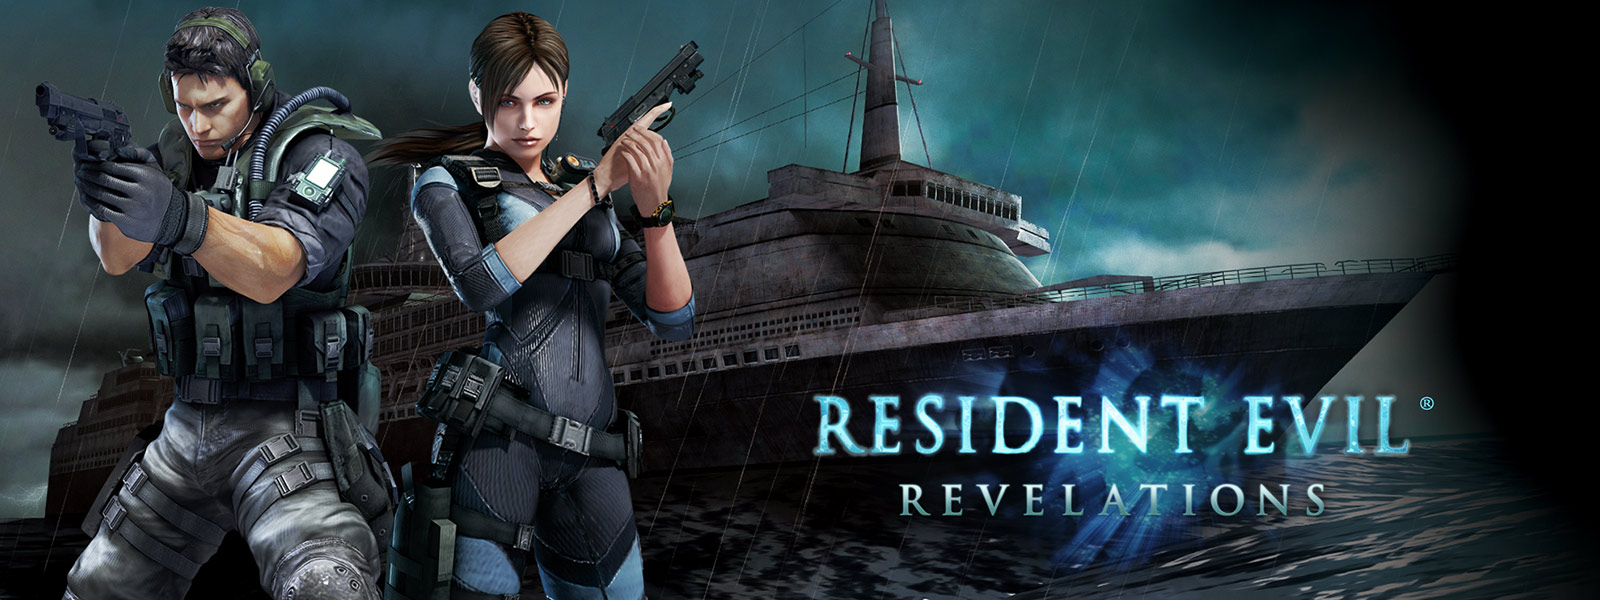 Resident Evil Revelations, to karakterer med pistoler foran et spøkelsesaktig cruiseskip